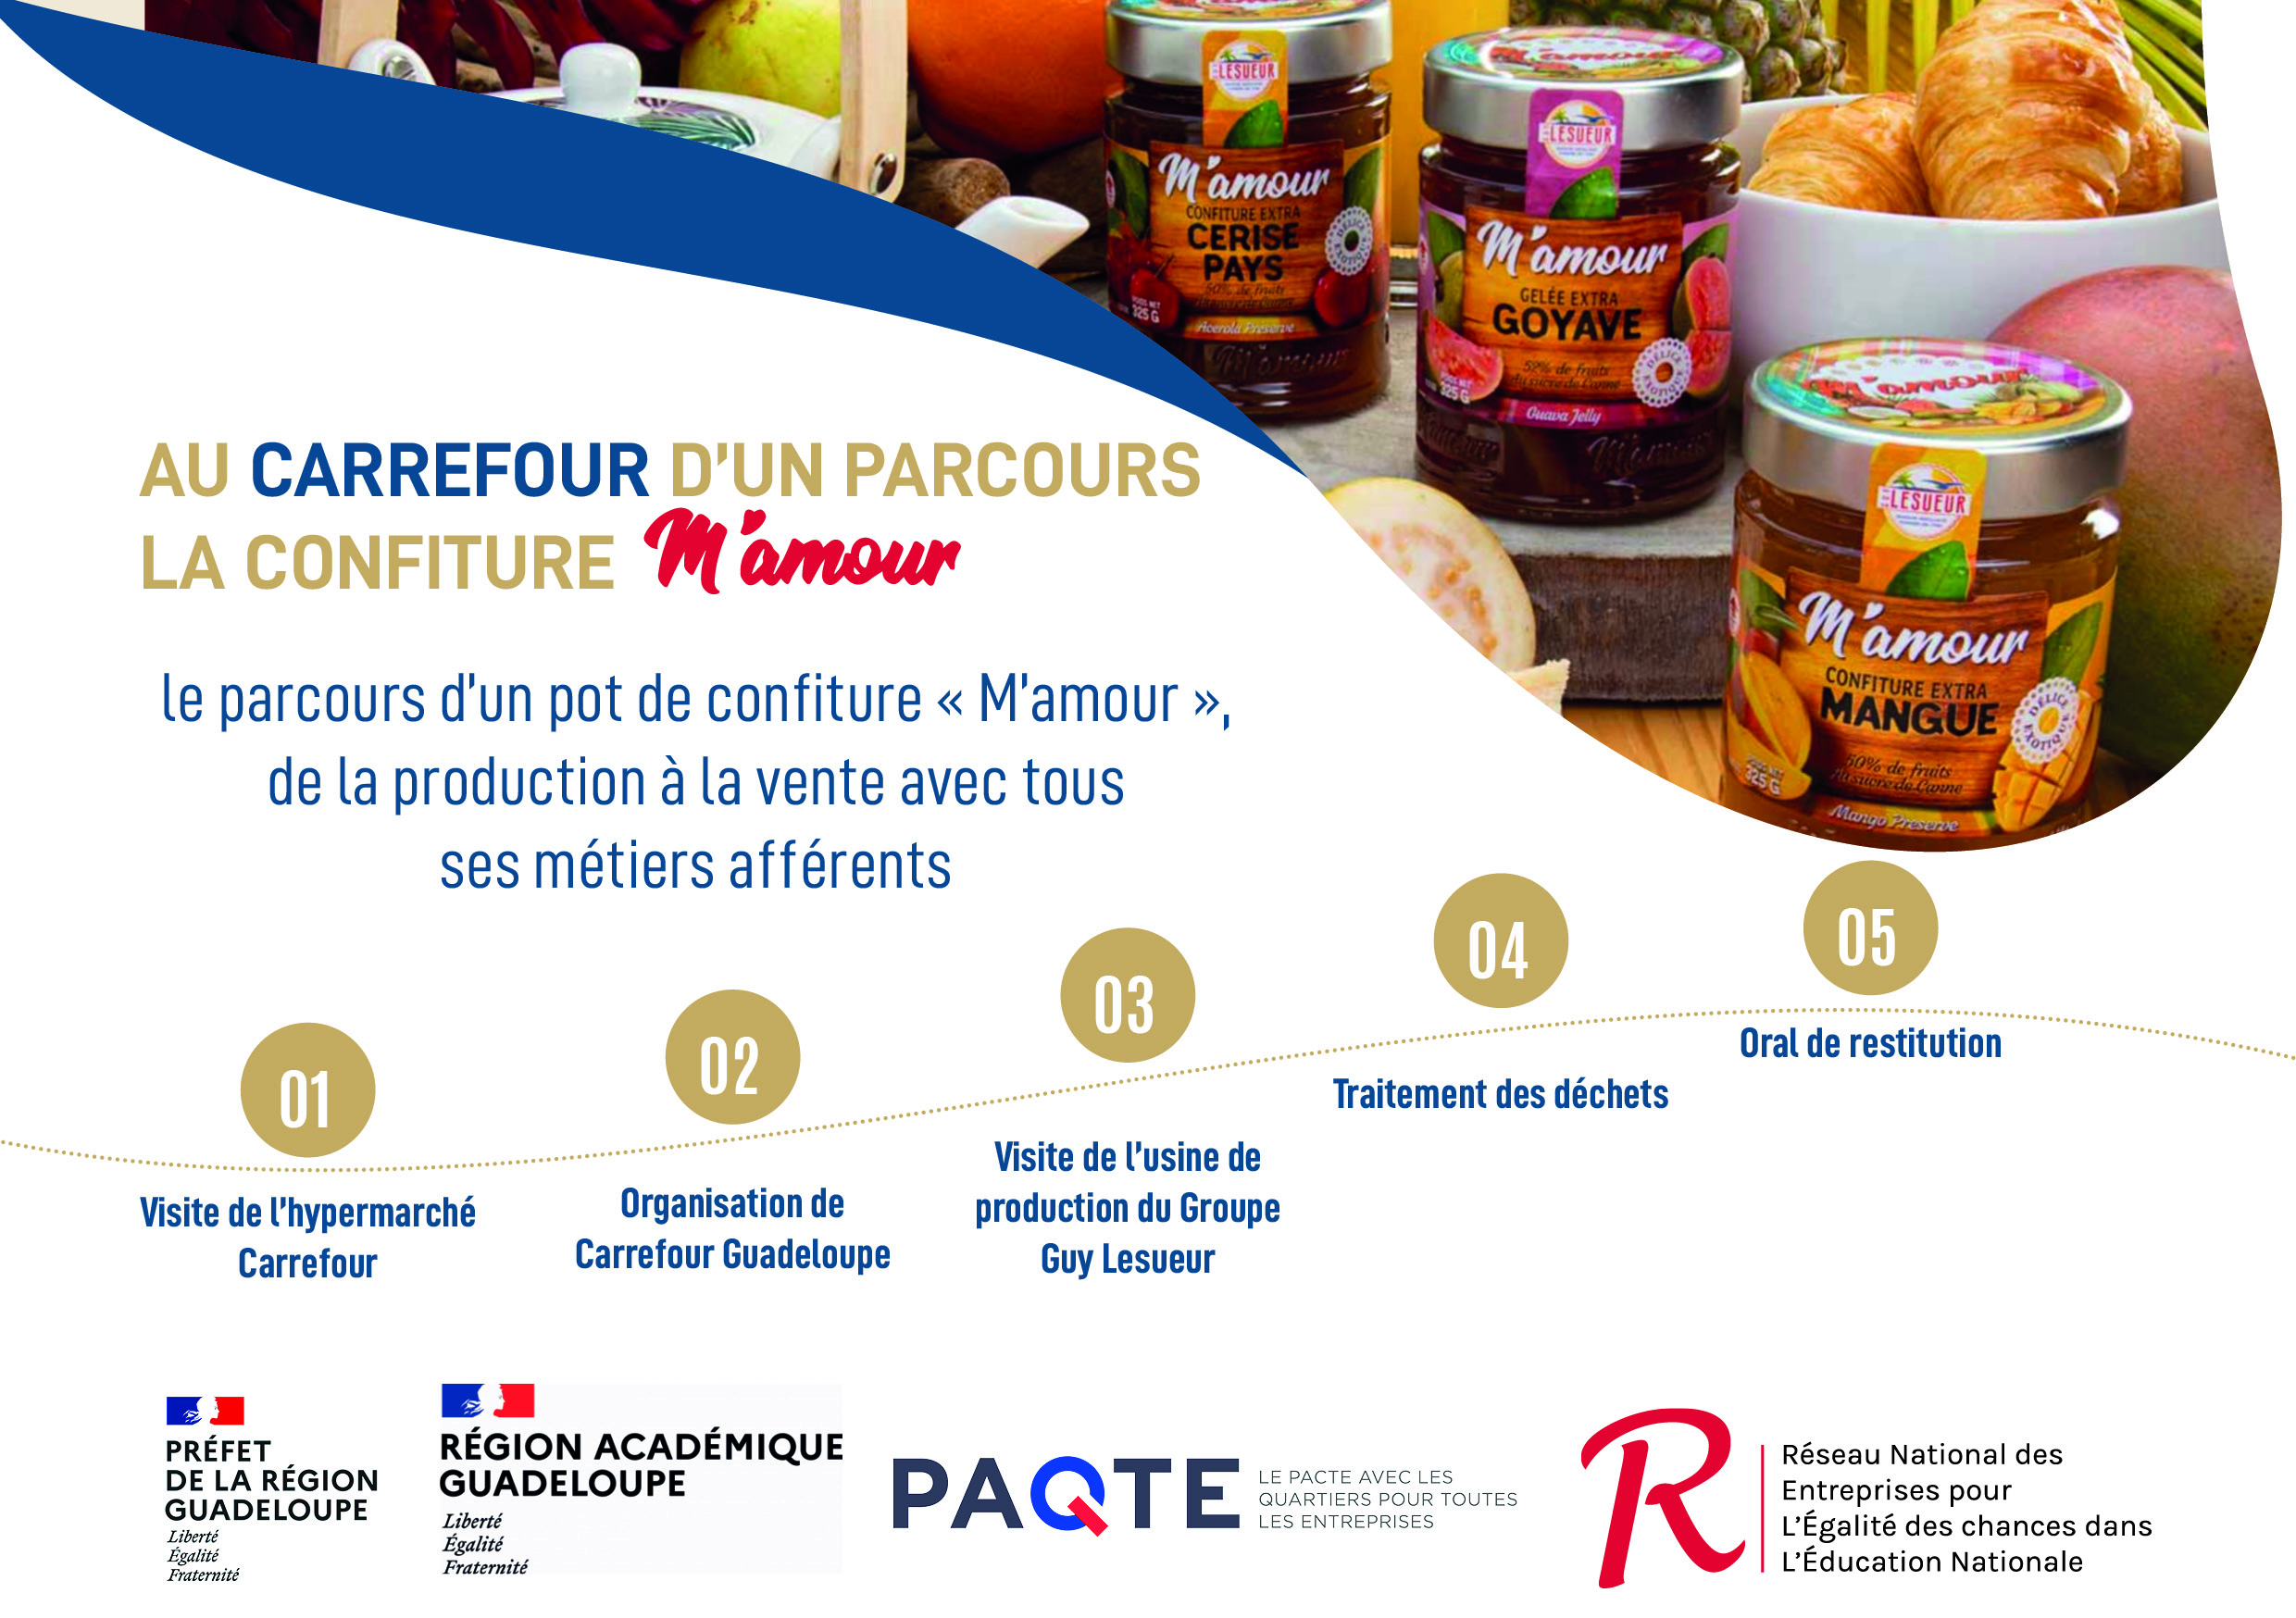 Lancement du programme « Au Carrefour d’un parcours : la Confiture M’amour » en Guadeloupe